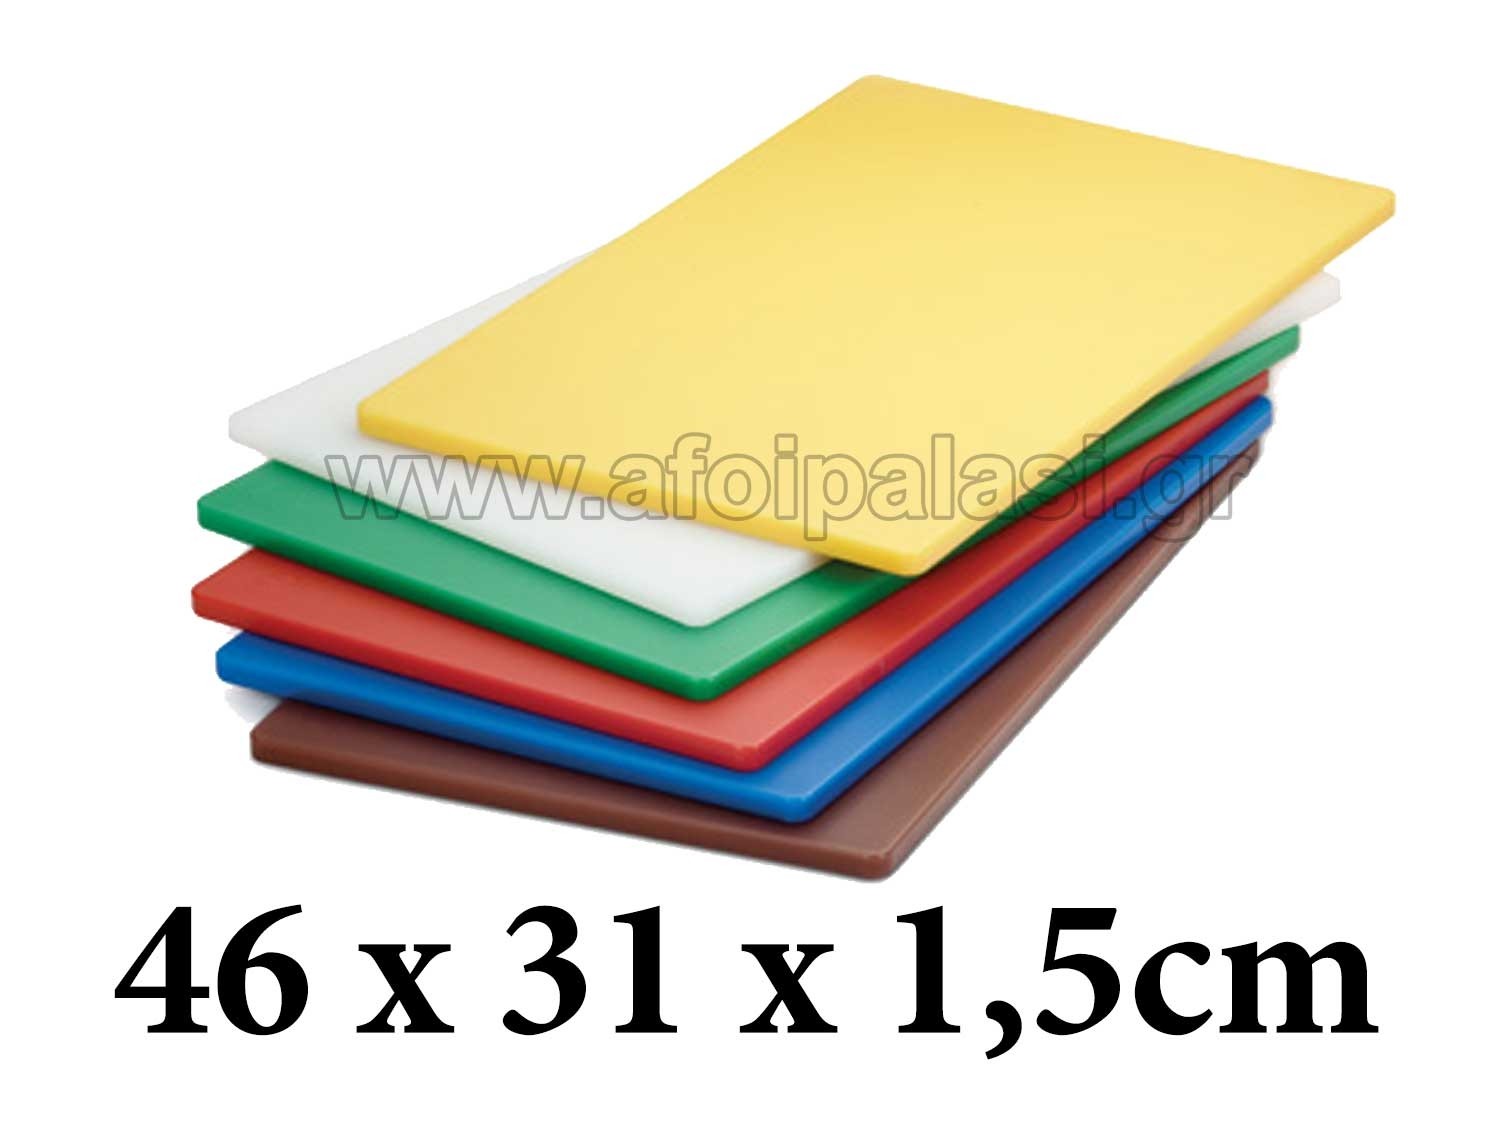 Πλάκα κοπής πολυαιθυλενίου Tablecraft Cutting boards 46x31x1,5cm σε 6 χρώματα